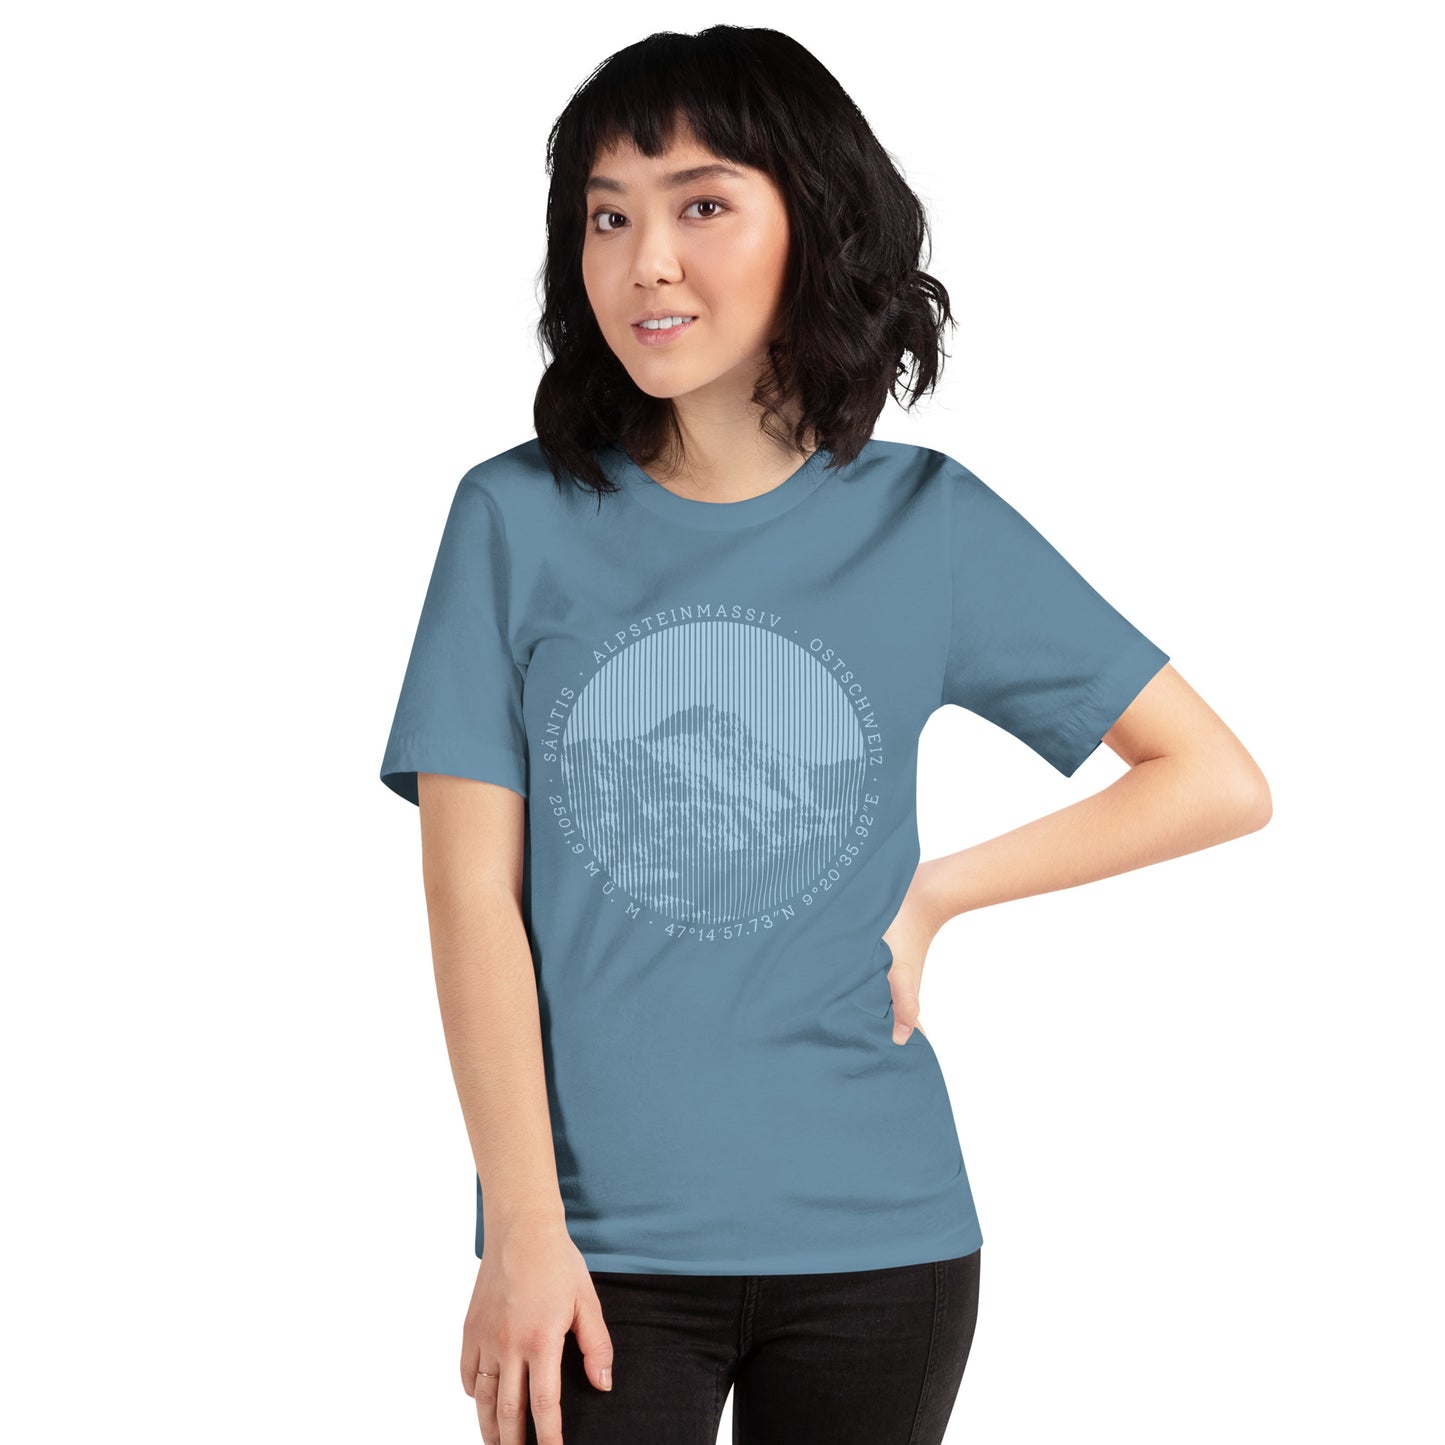 Diese Bergbegeisterte trägt ein stahlblaues Damen T-Shirt von Vallada mit einem Aufdruck des Säntis-Gipfels. Dieses T-Shirt ist ein Statement für ihren Enthusiasmus für diesen Berg in den Appenzeller Alpen.